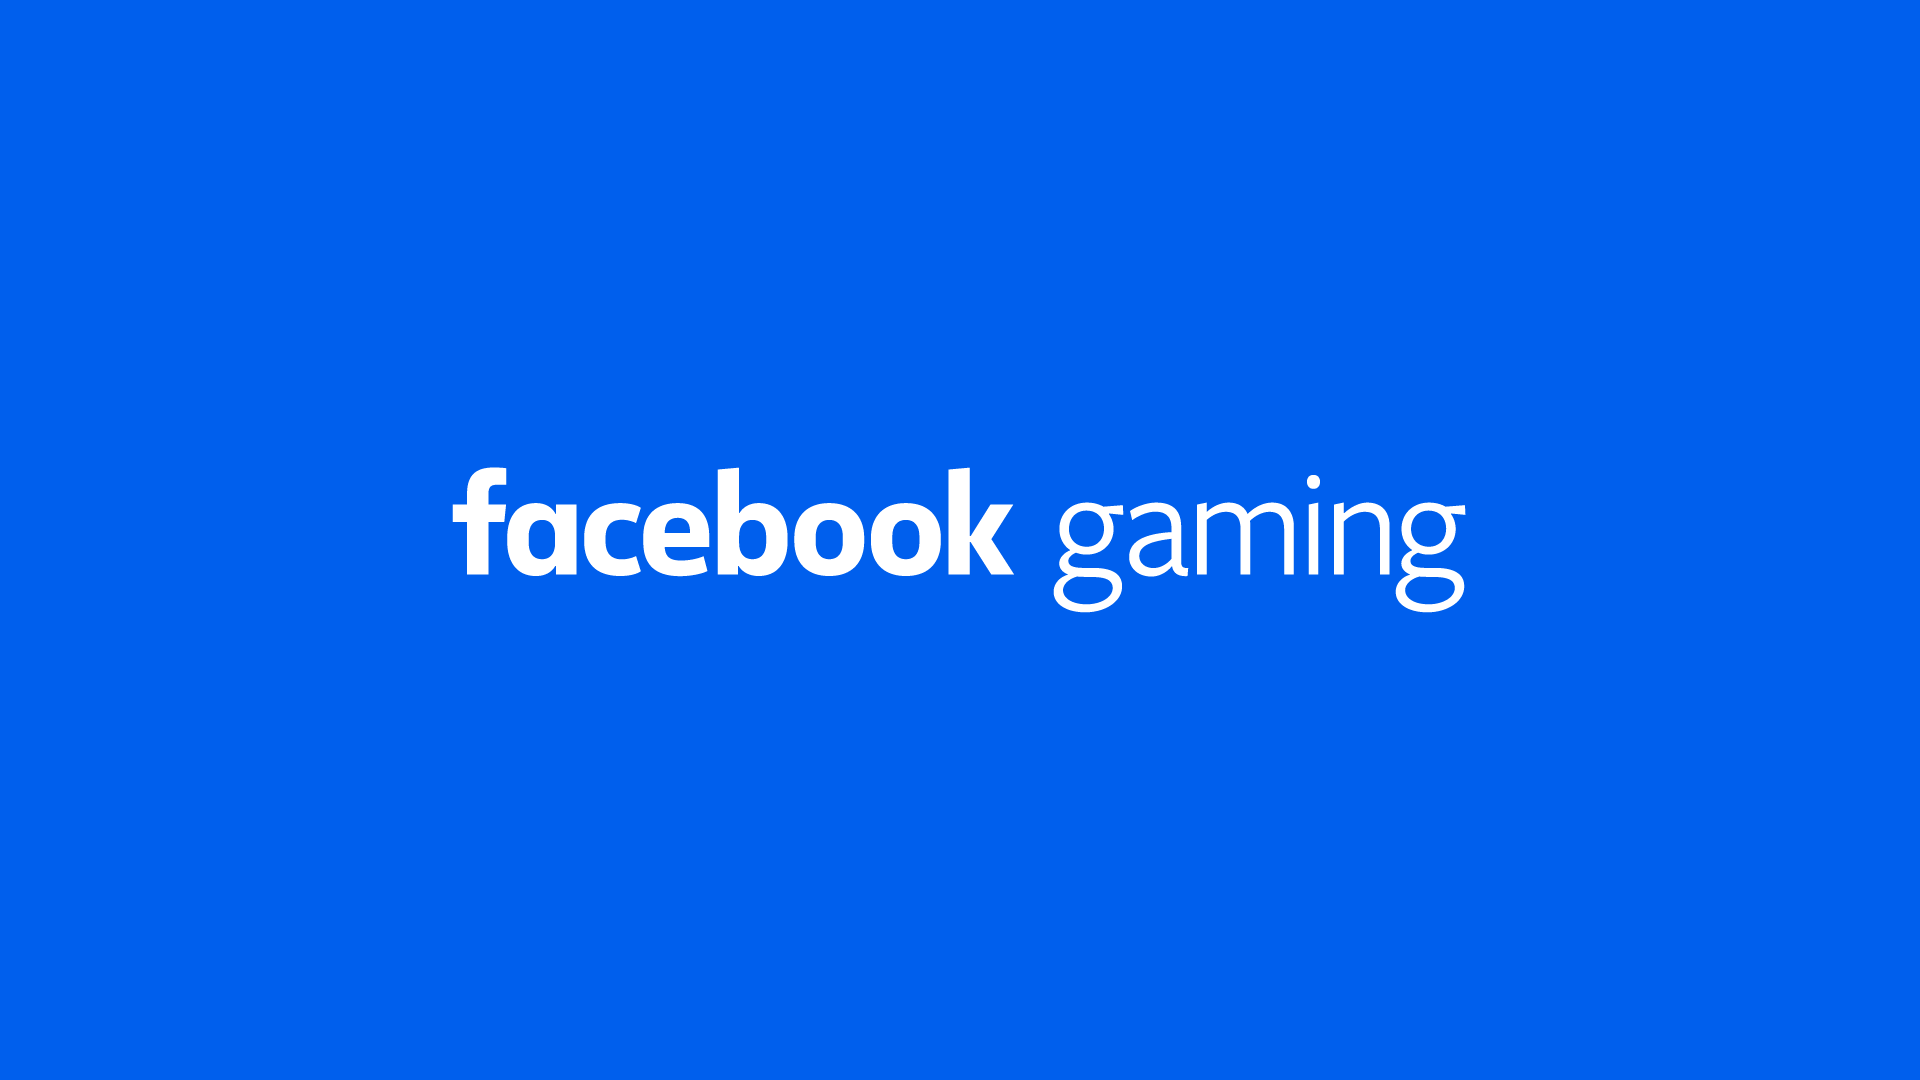 Facebook gaming: app lançado oficialmente | 5a07bbf5 facebook gaming | married games notícias | facebook | facebook gaming